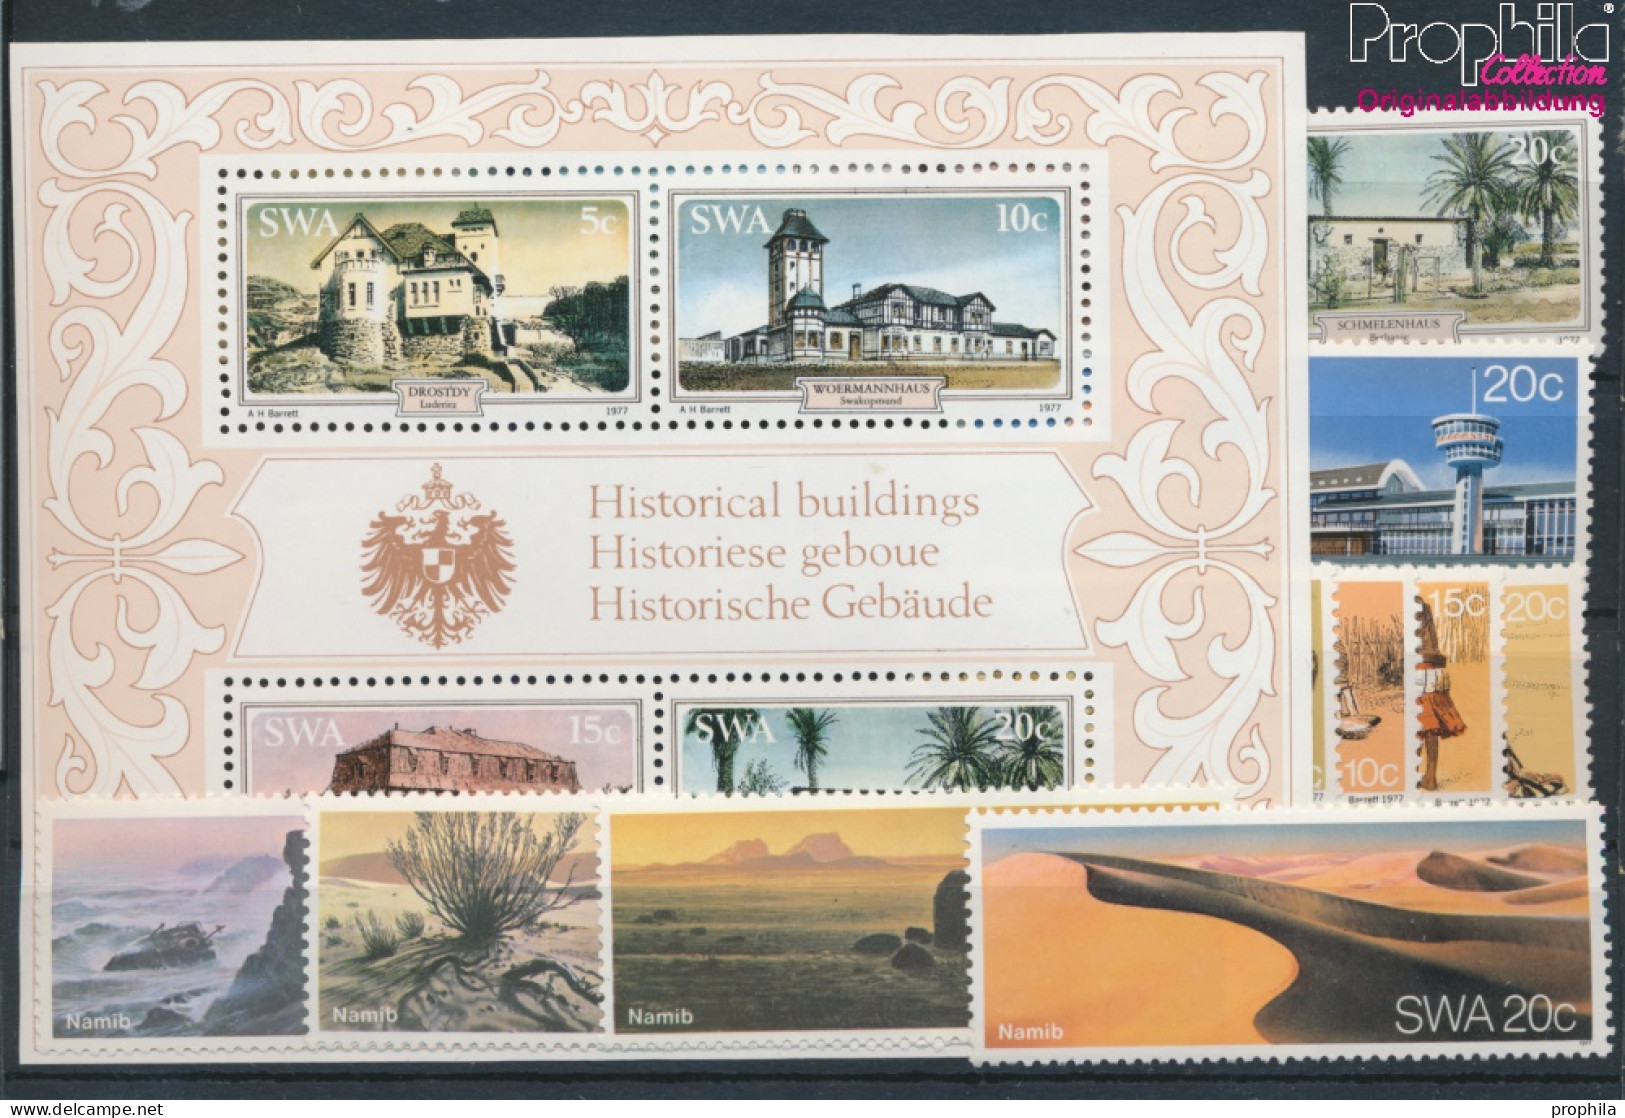 Namibia - Südwestafrika Postfrisch Namib-Wüste 1977 Gebäude, Namib, Wambos, Flughafen  (10368359 - Afrique Du Sud-Ouest (1923-1990)